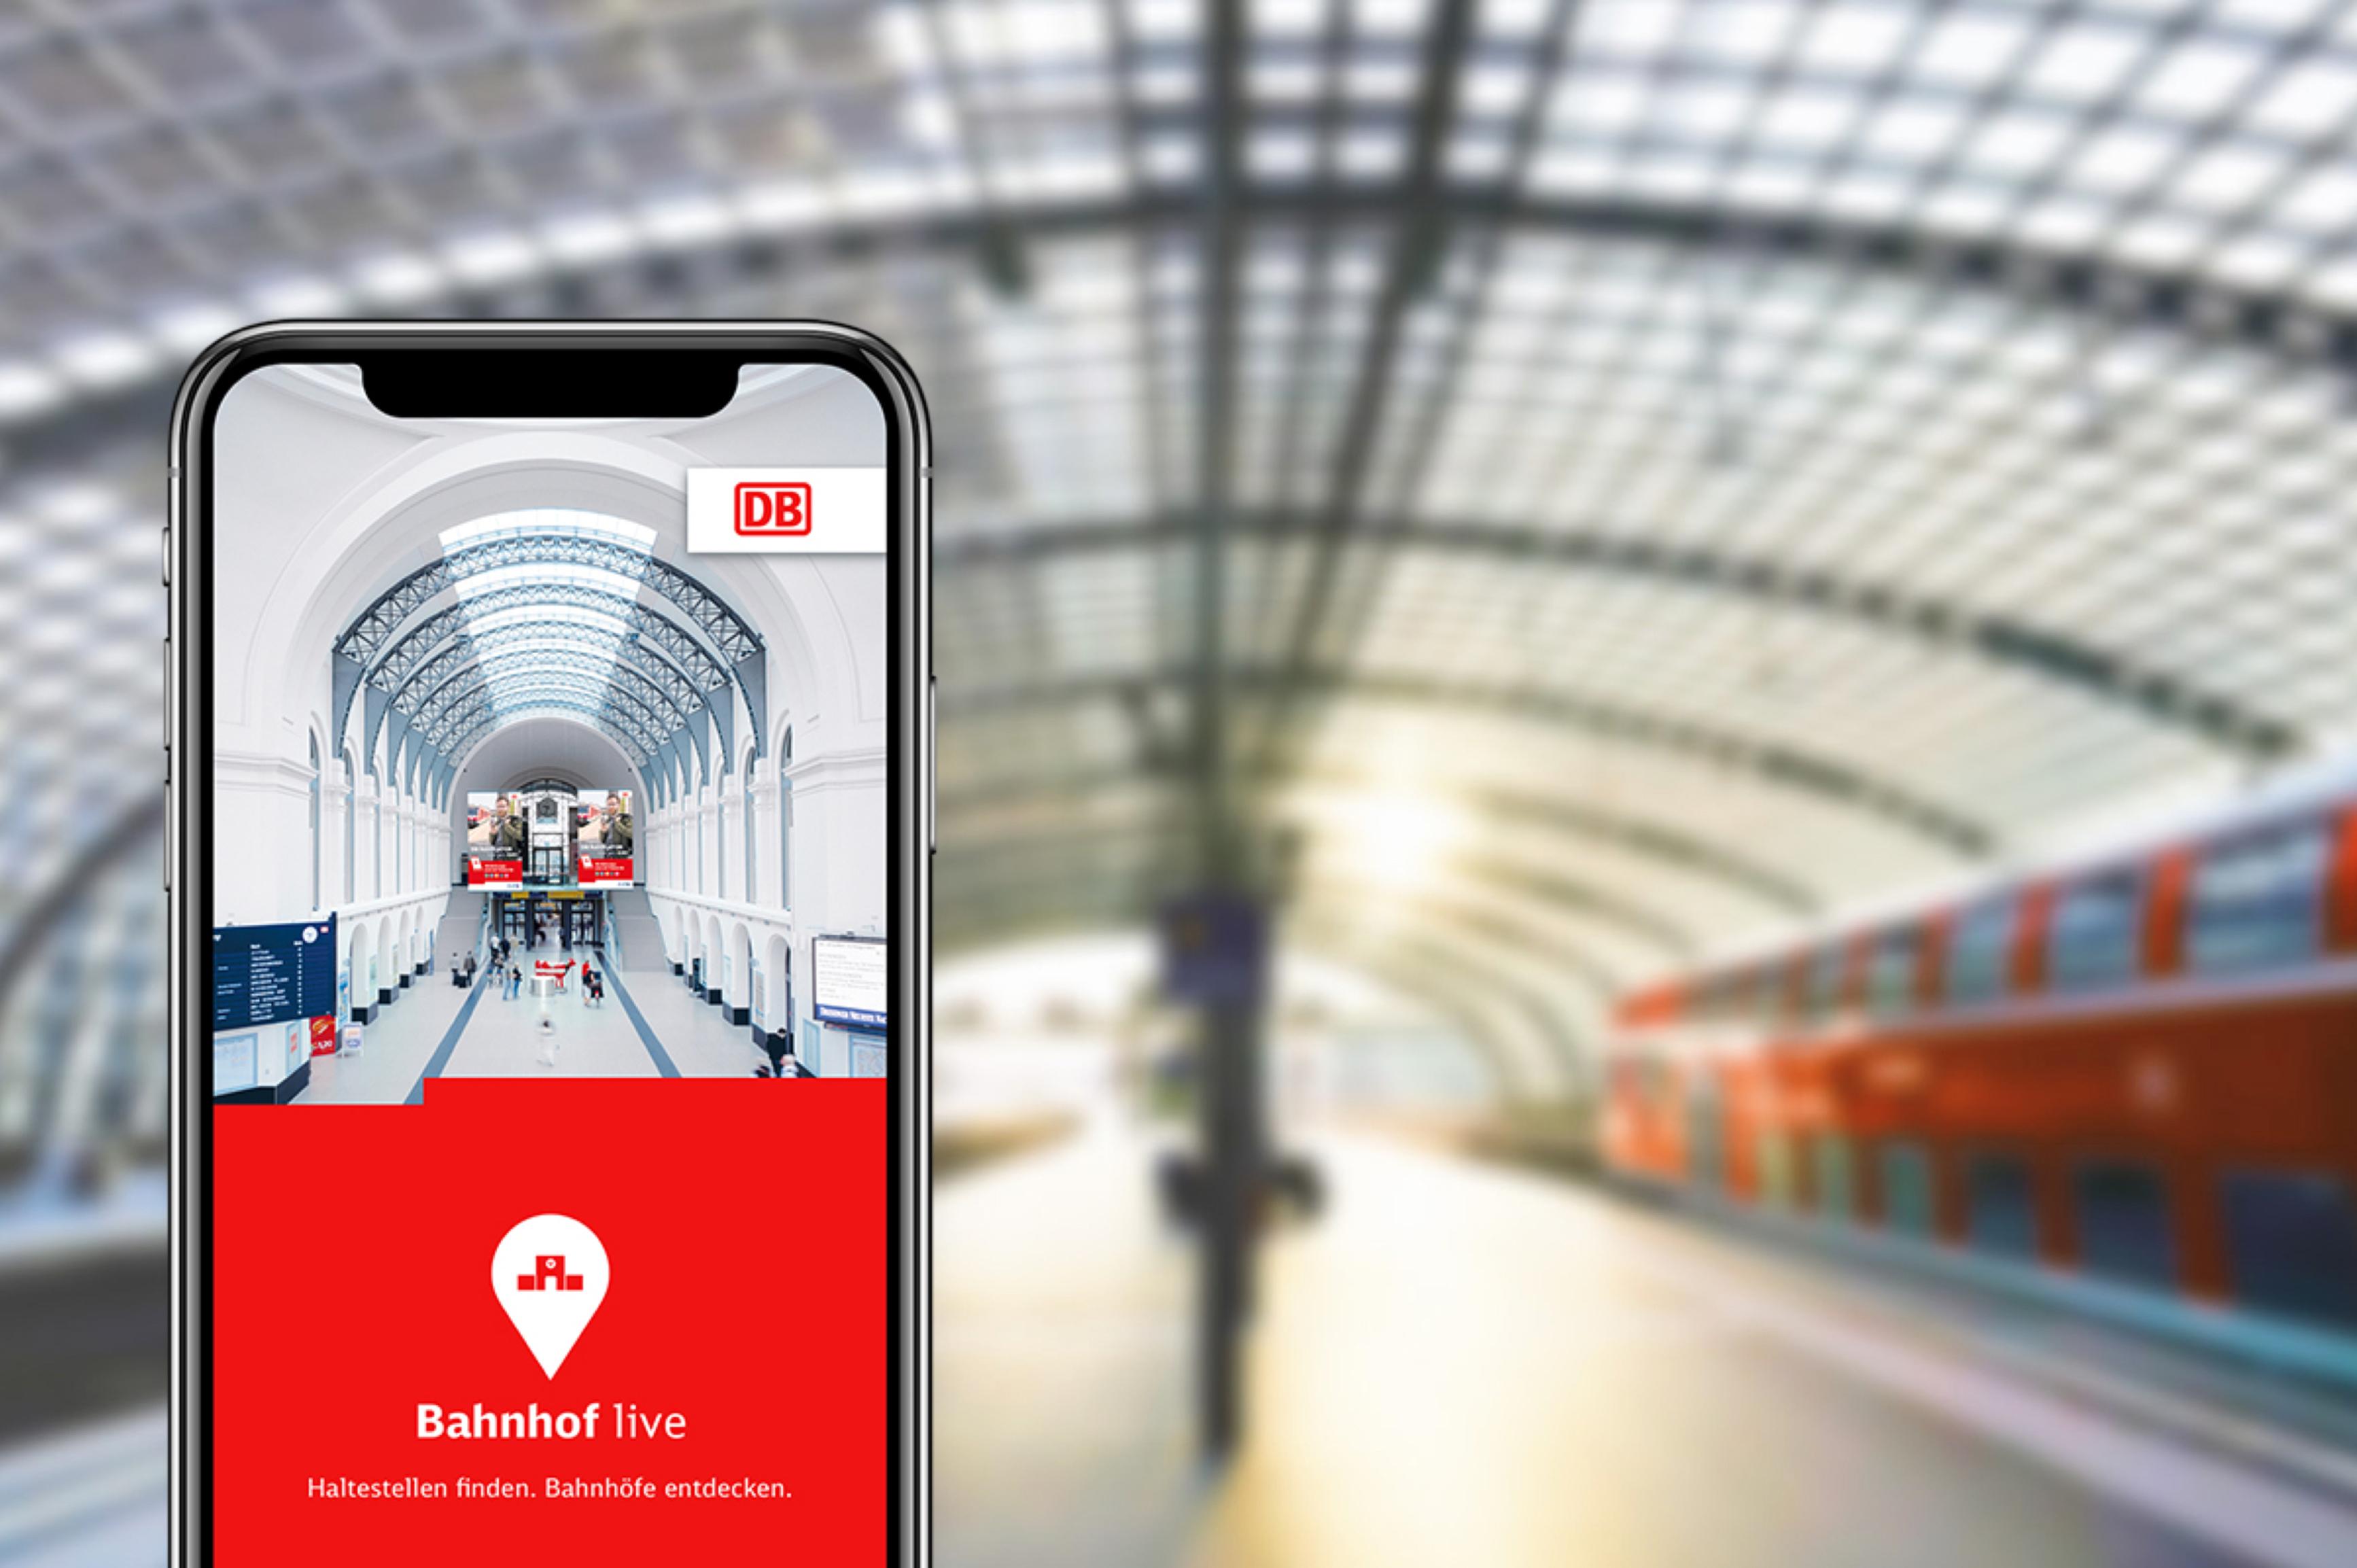 Vor dem Hintergrund eines Bahnsteiges mit einem haltenden Regionalzug wird ein Smartphone mit der geöffneten DB Bahnhof live App gezeigt.